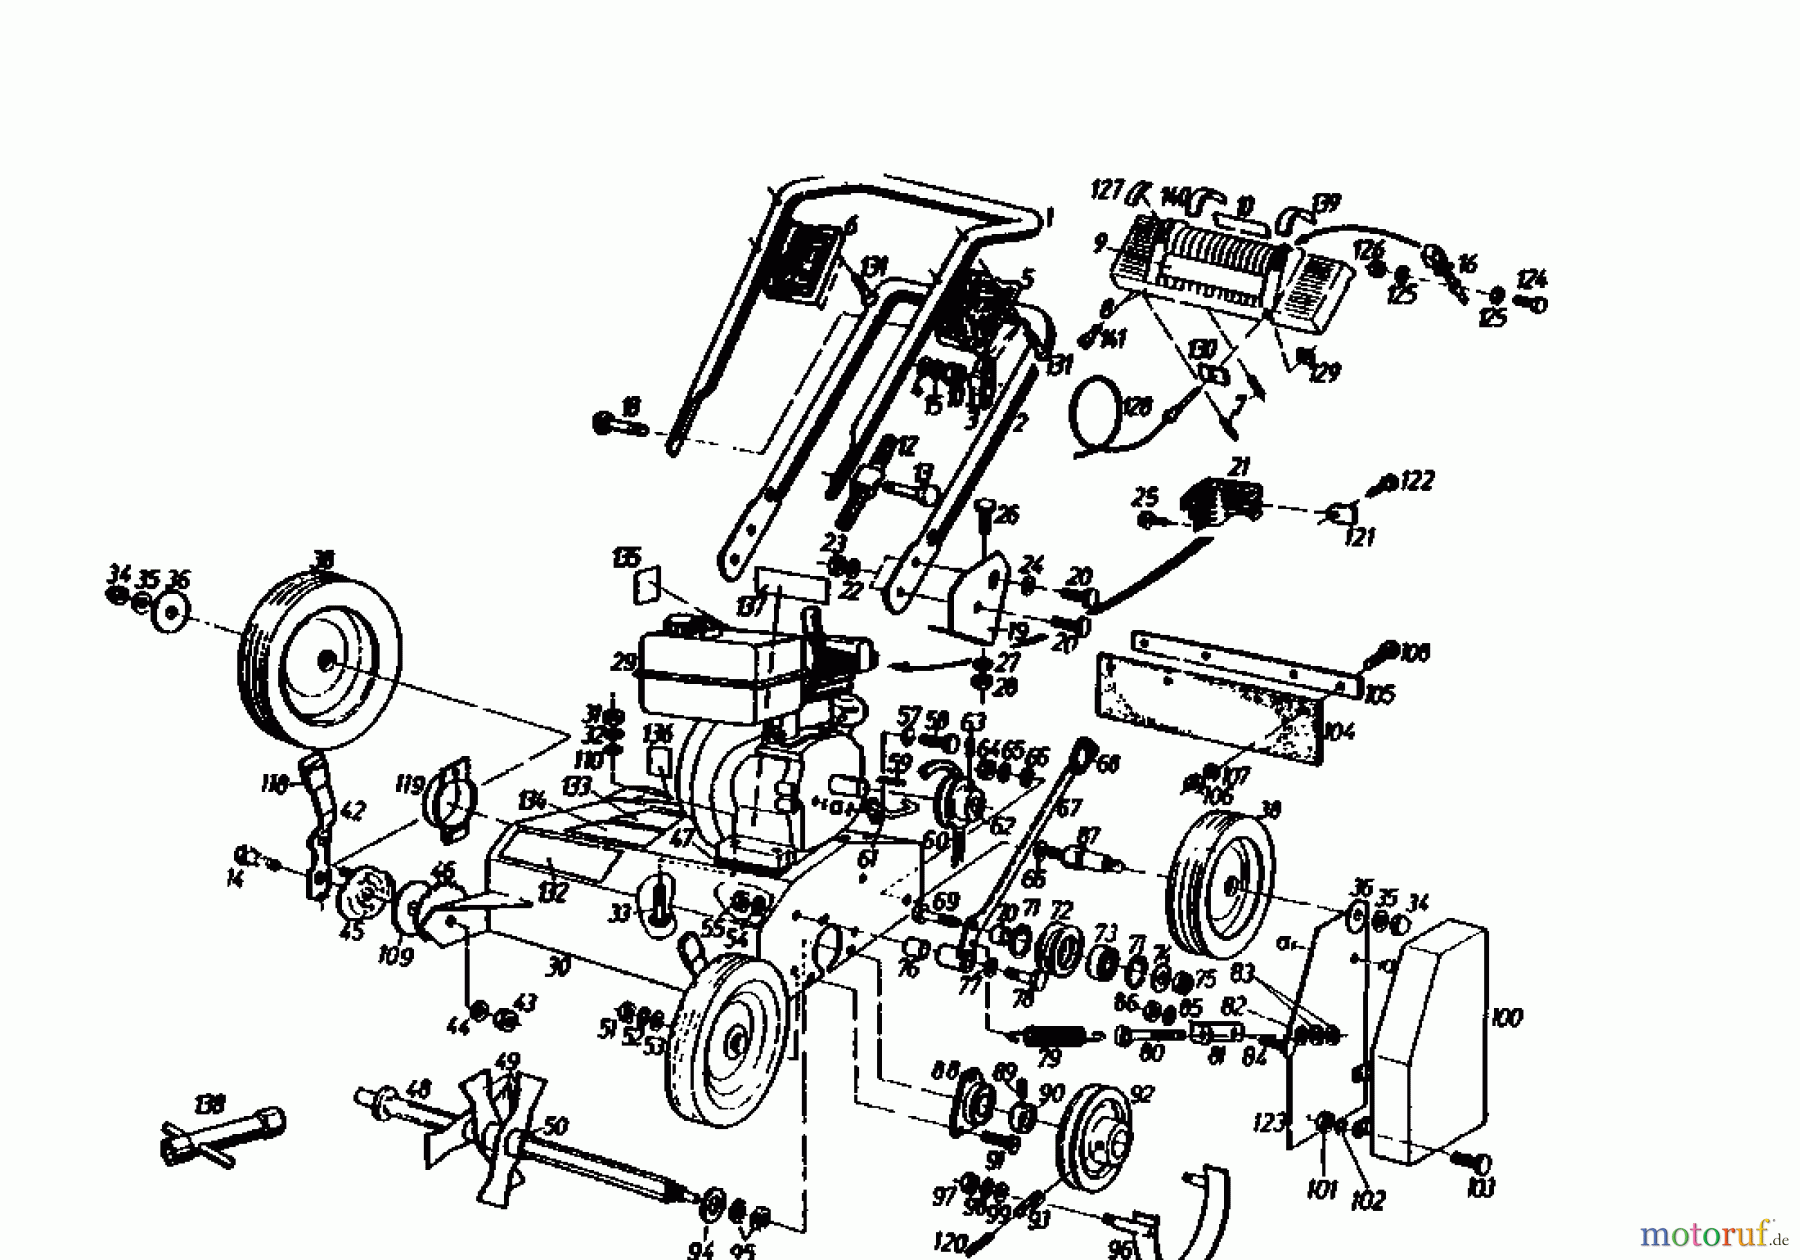  Gutbrod Scarificateur thermique MV 504 00053.03  (1991) Machine de base